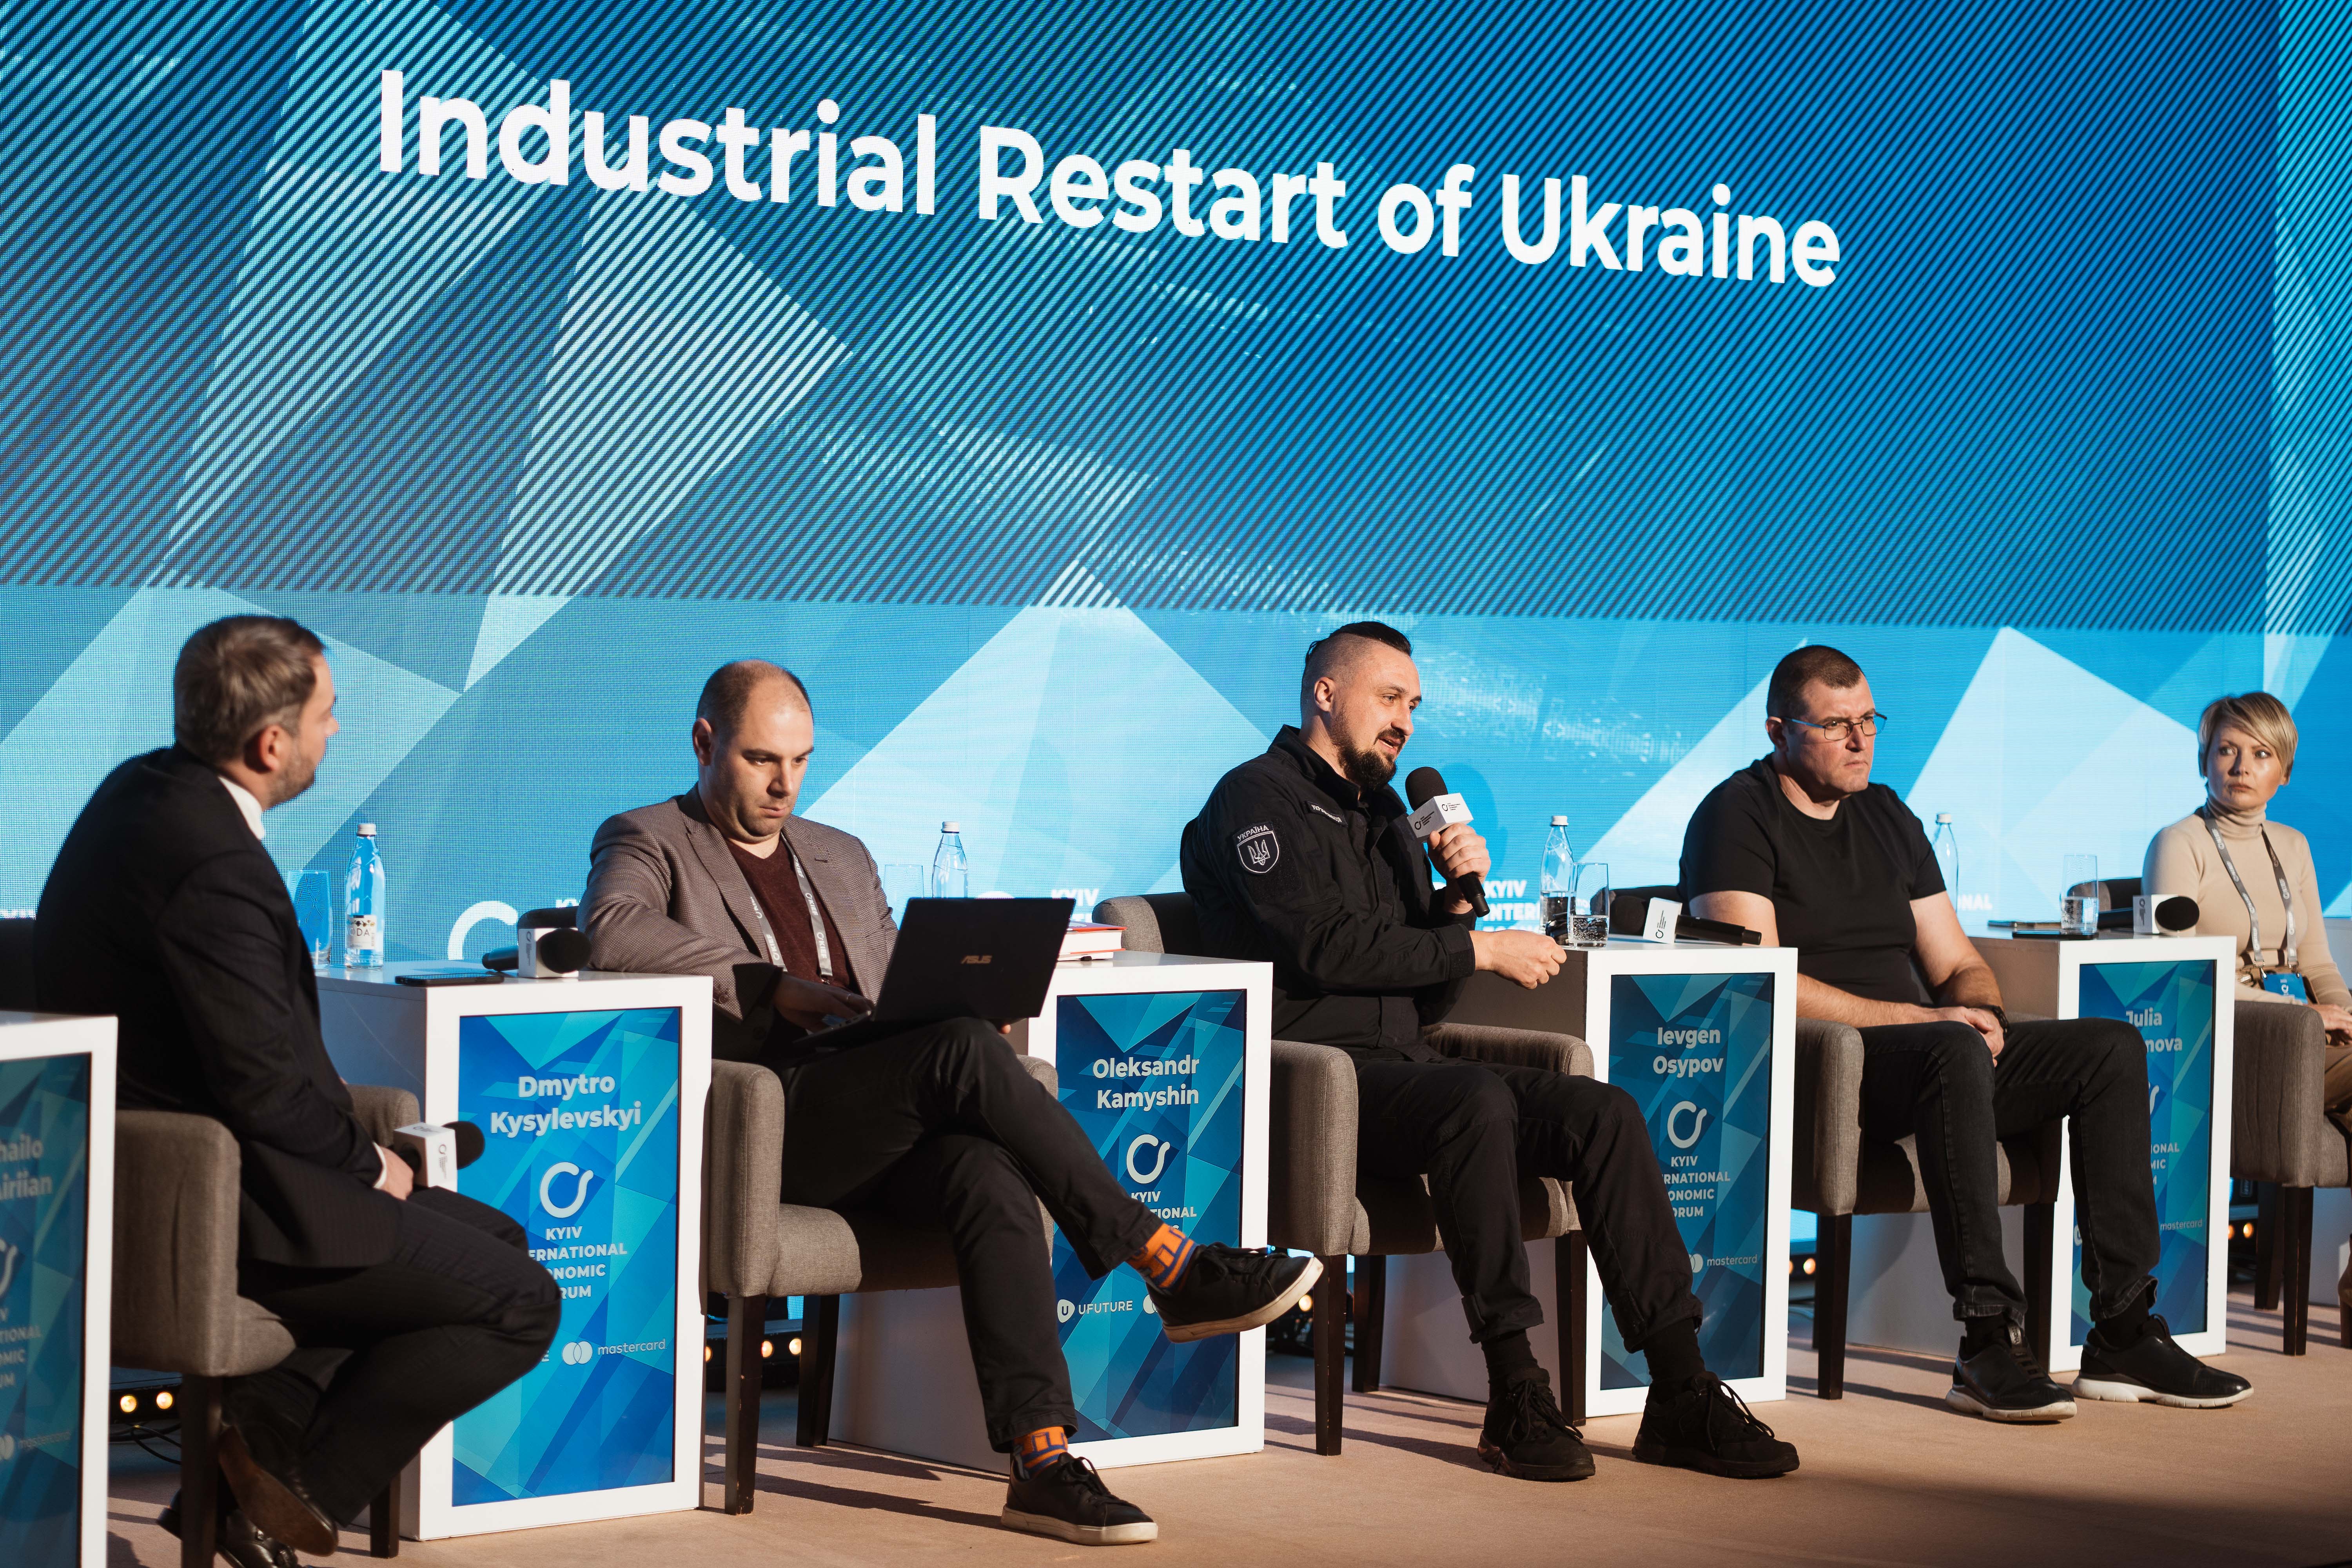  Индустриальный рестарт Украины